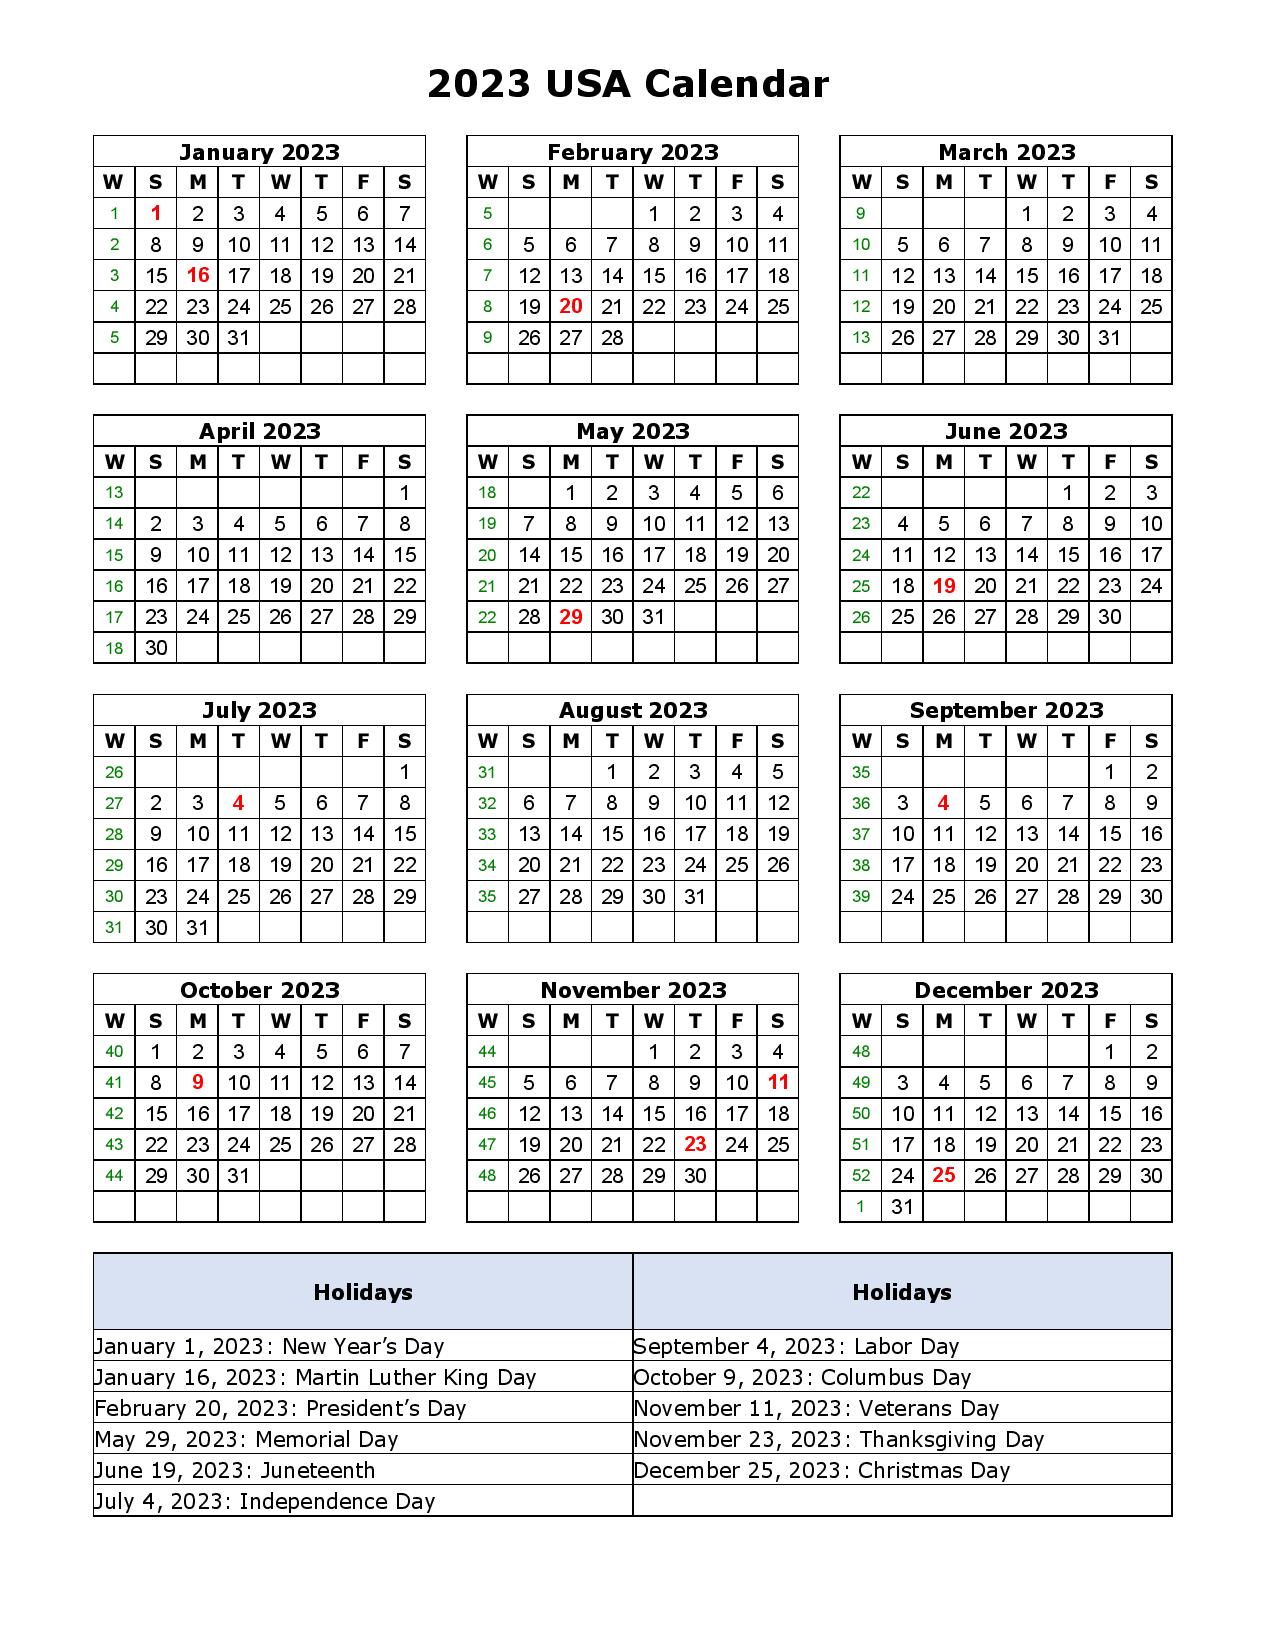 2023 USA Calendar Holidays